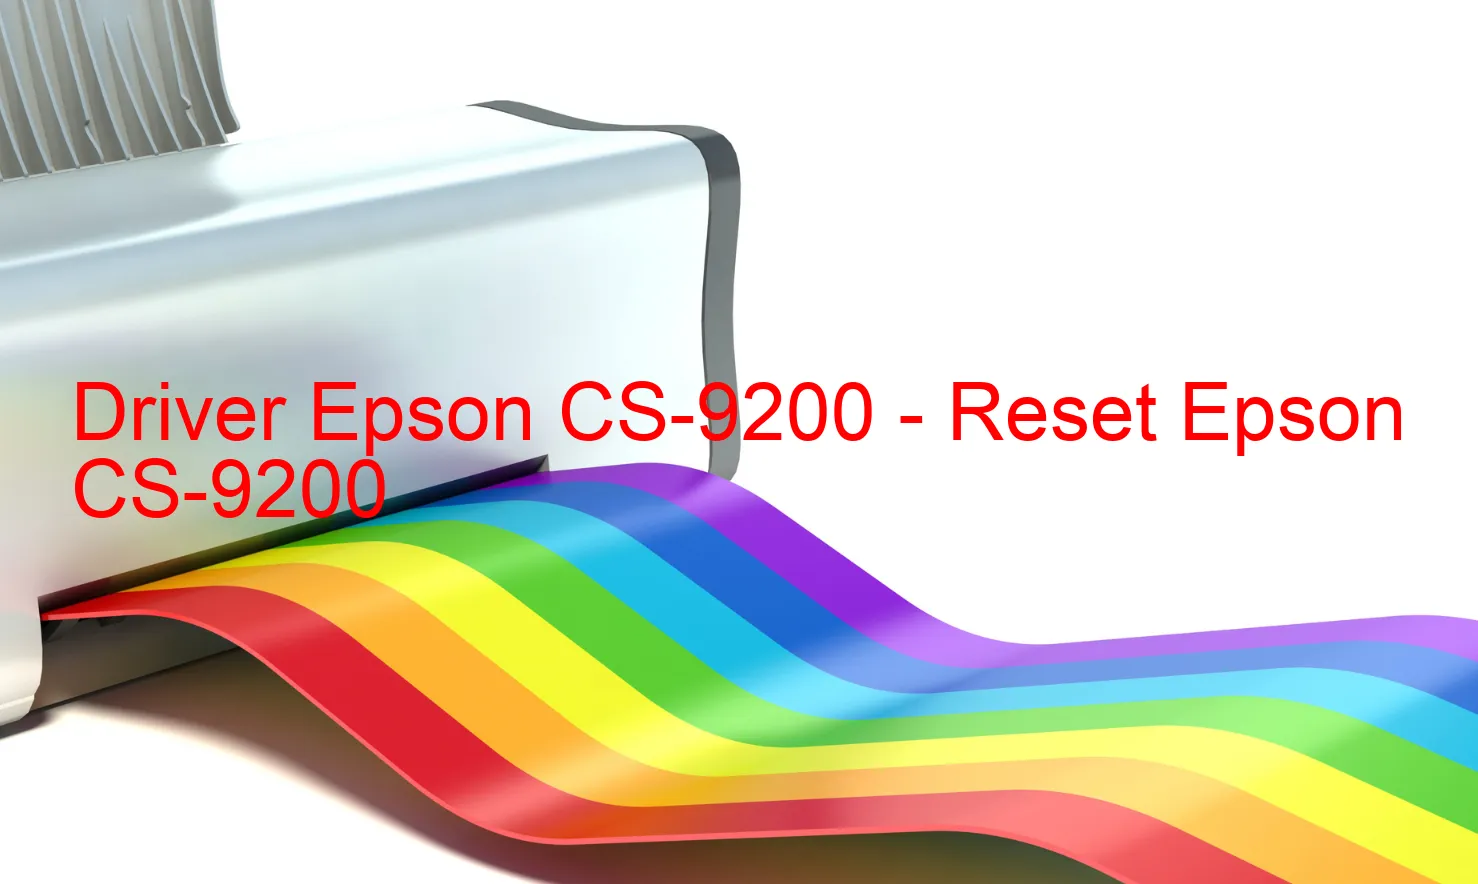 Epson CS-9200のドライバー、Epson CS-9200のリセットソフトウェア